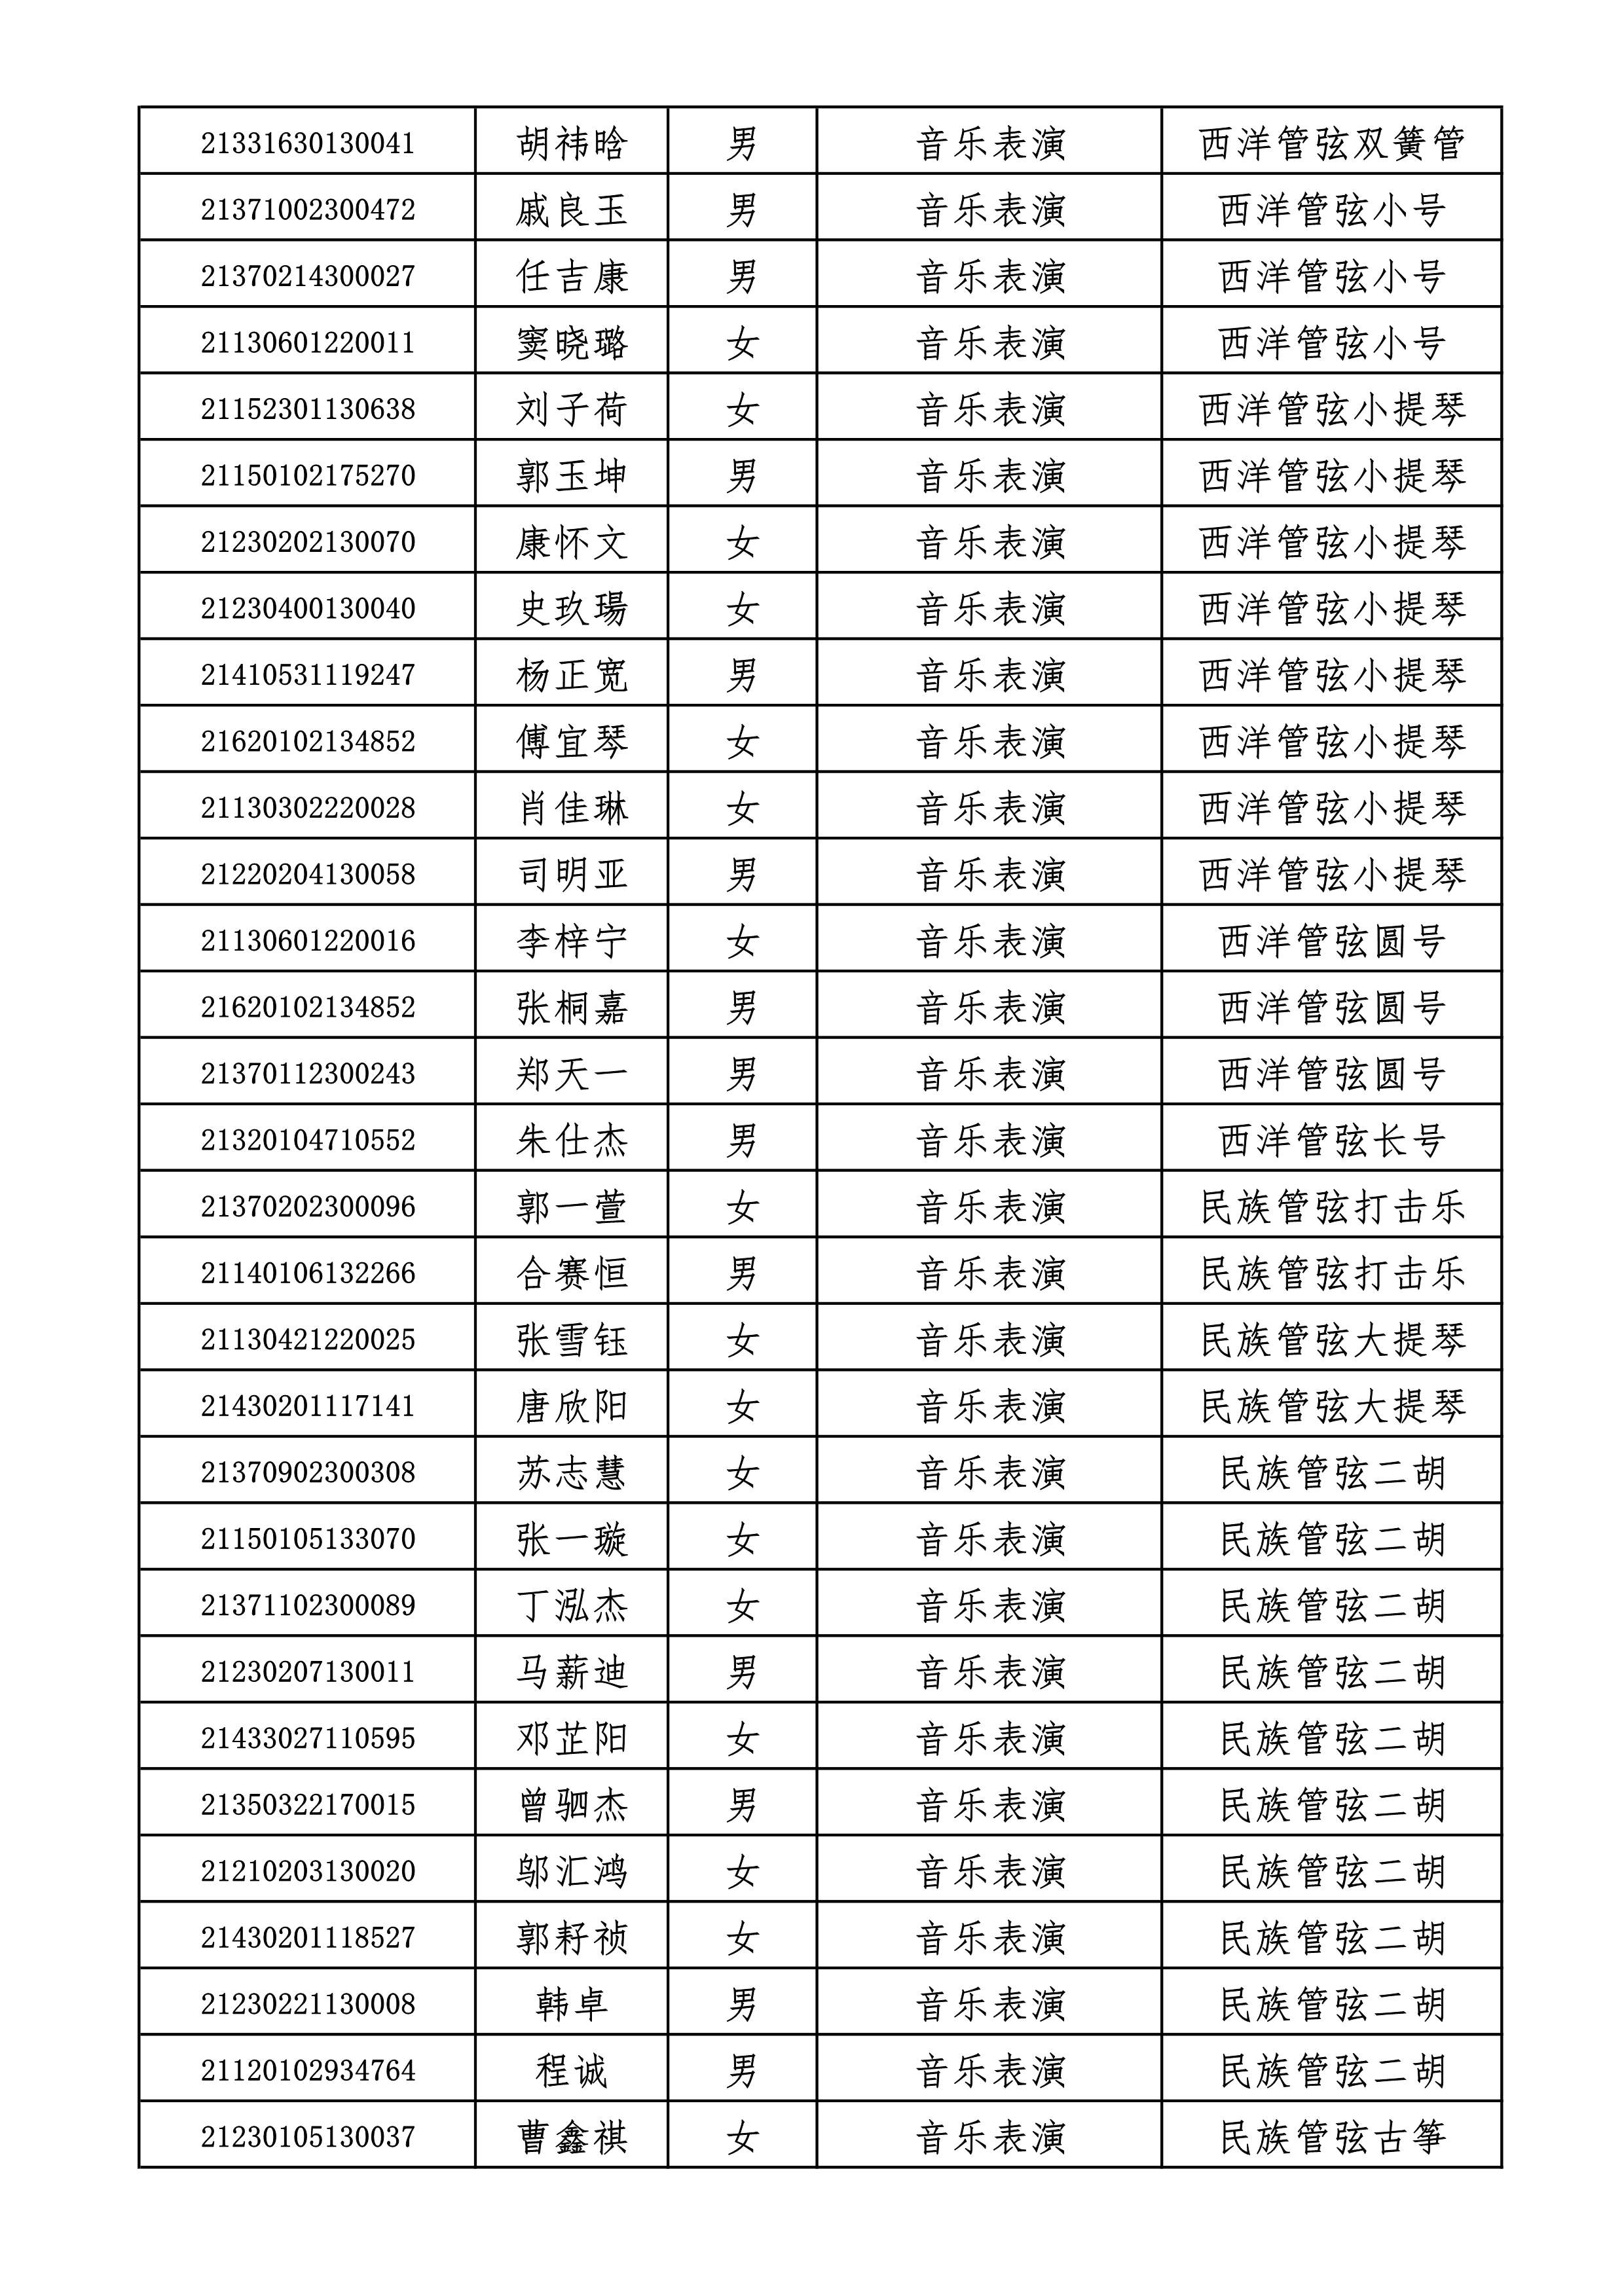 附件2+哈尔滨音乐学院2021年本科招生拟录取名单_3.jpg